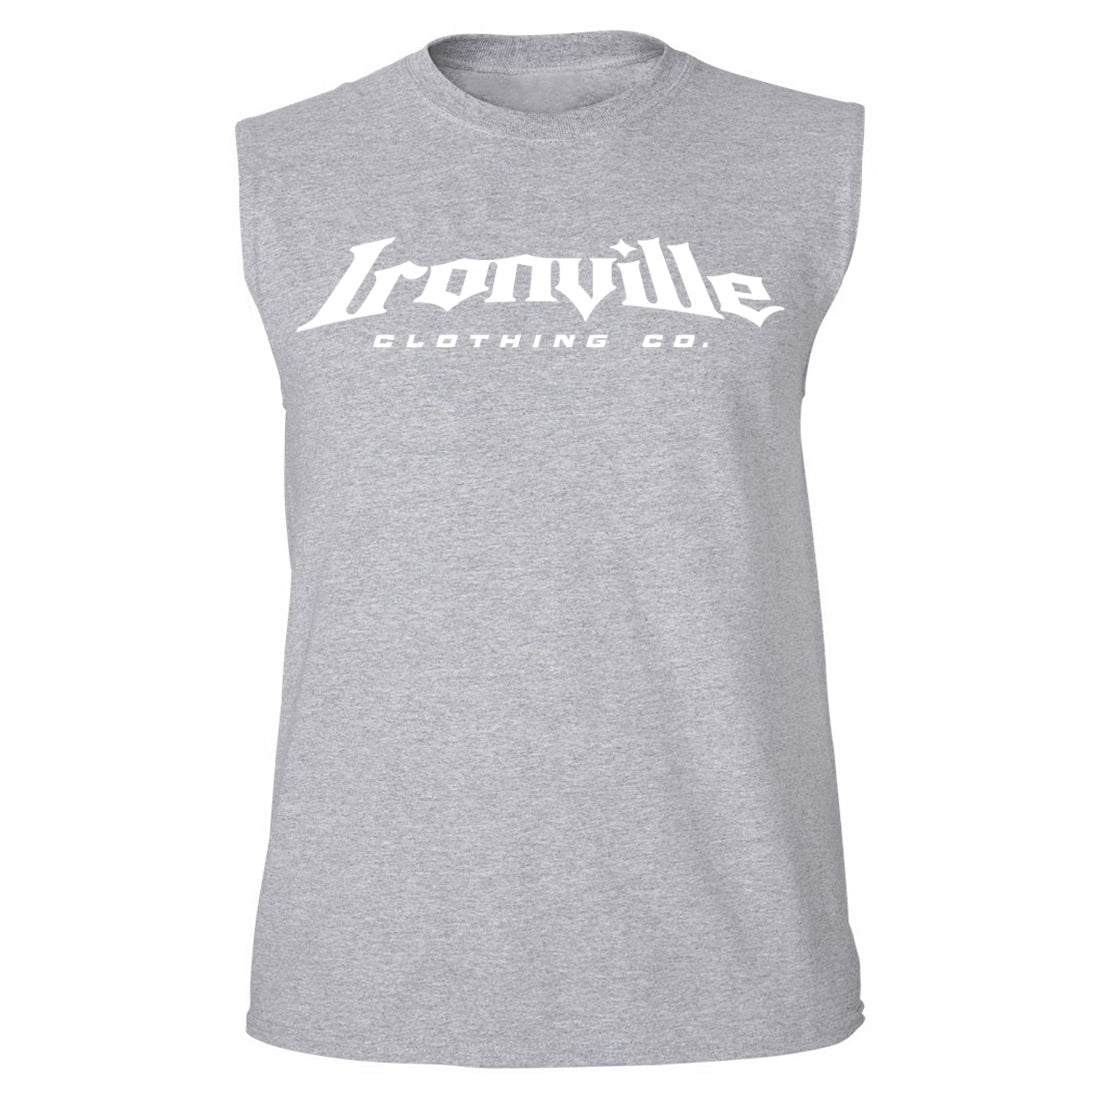 Ironville DAMN WEIGHTS Sleeveless Muscle T-shirt